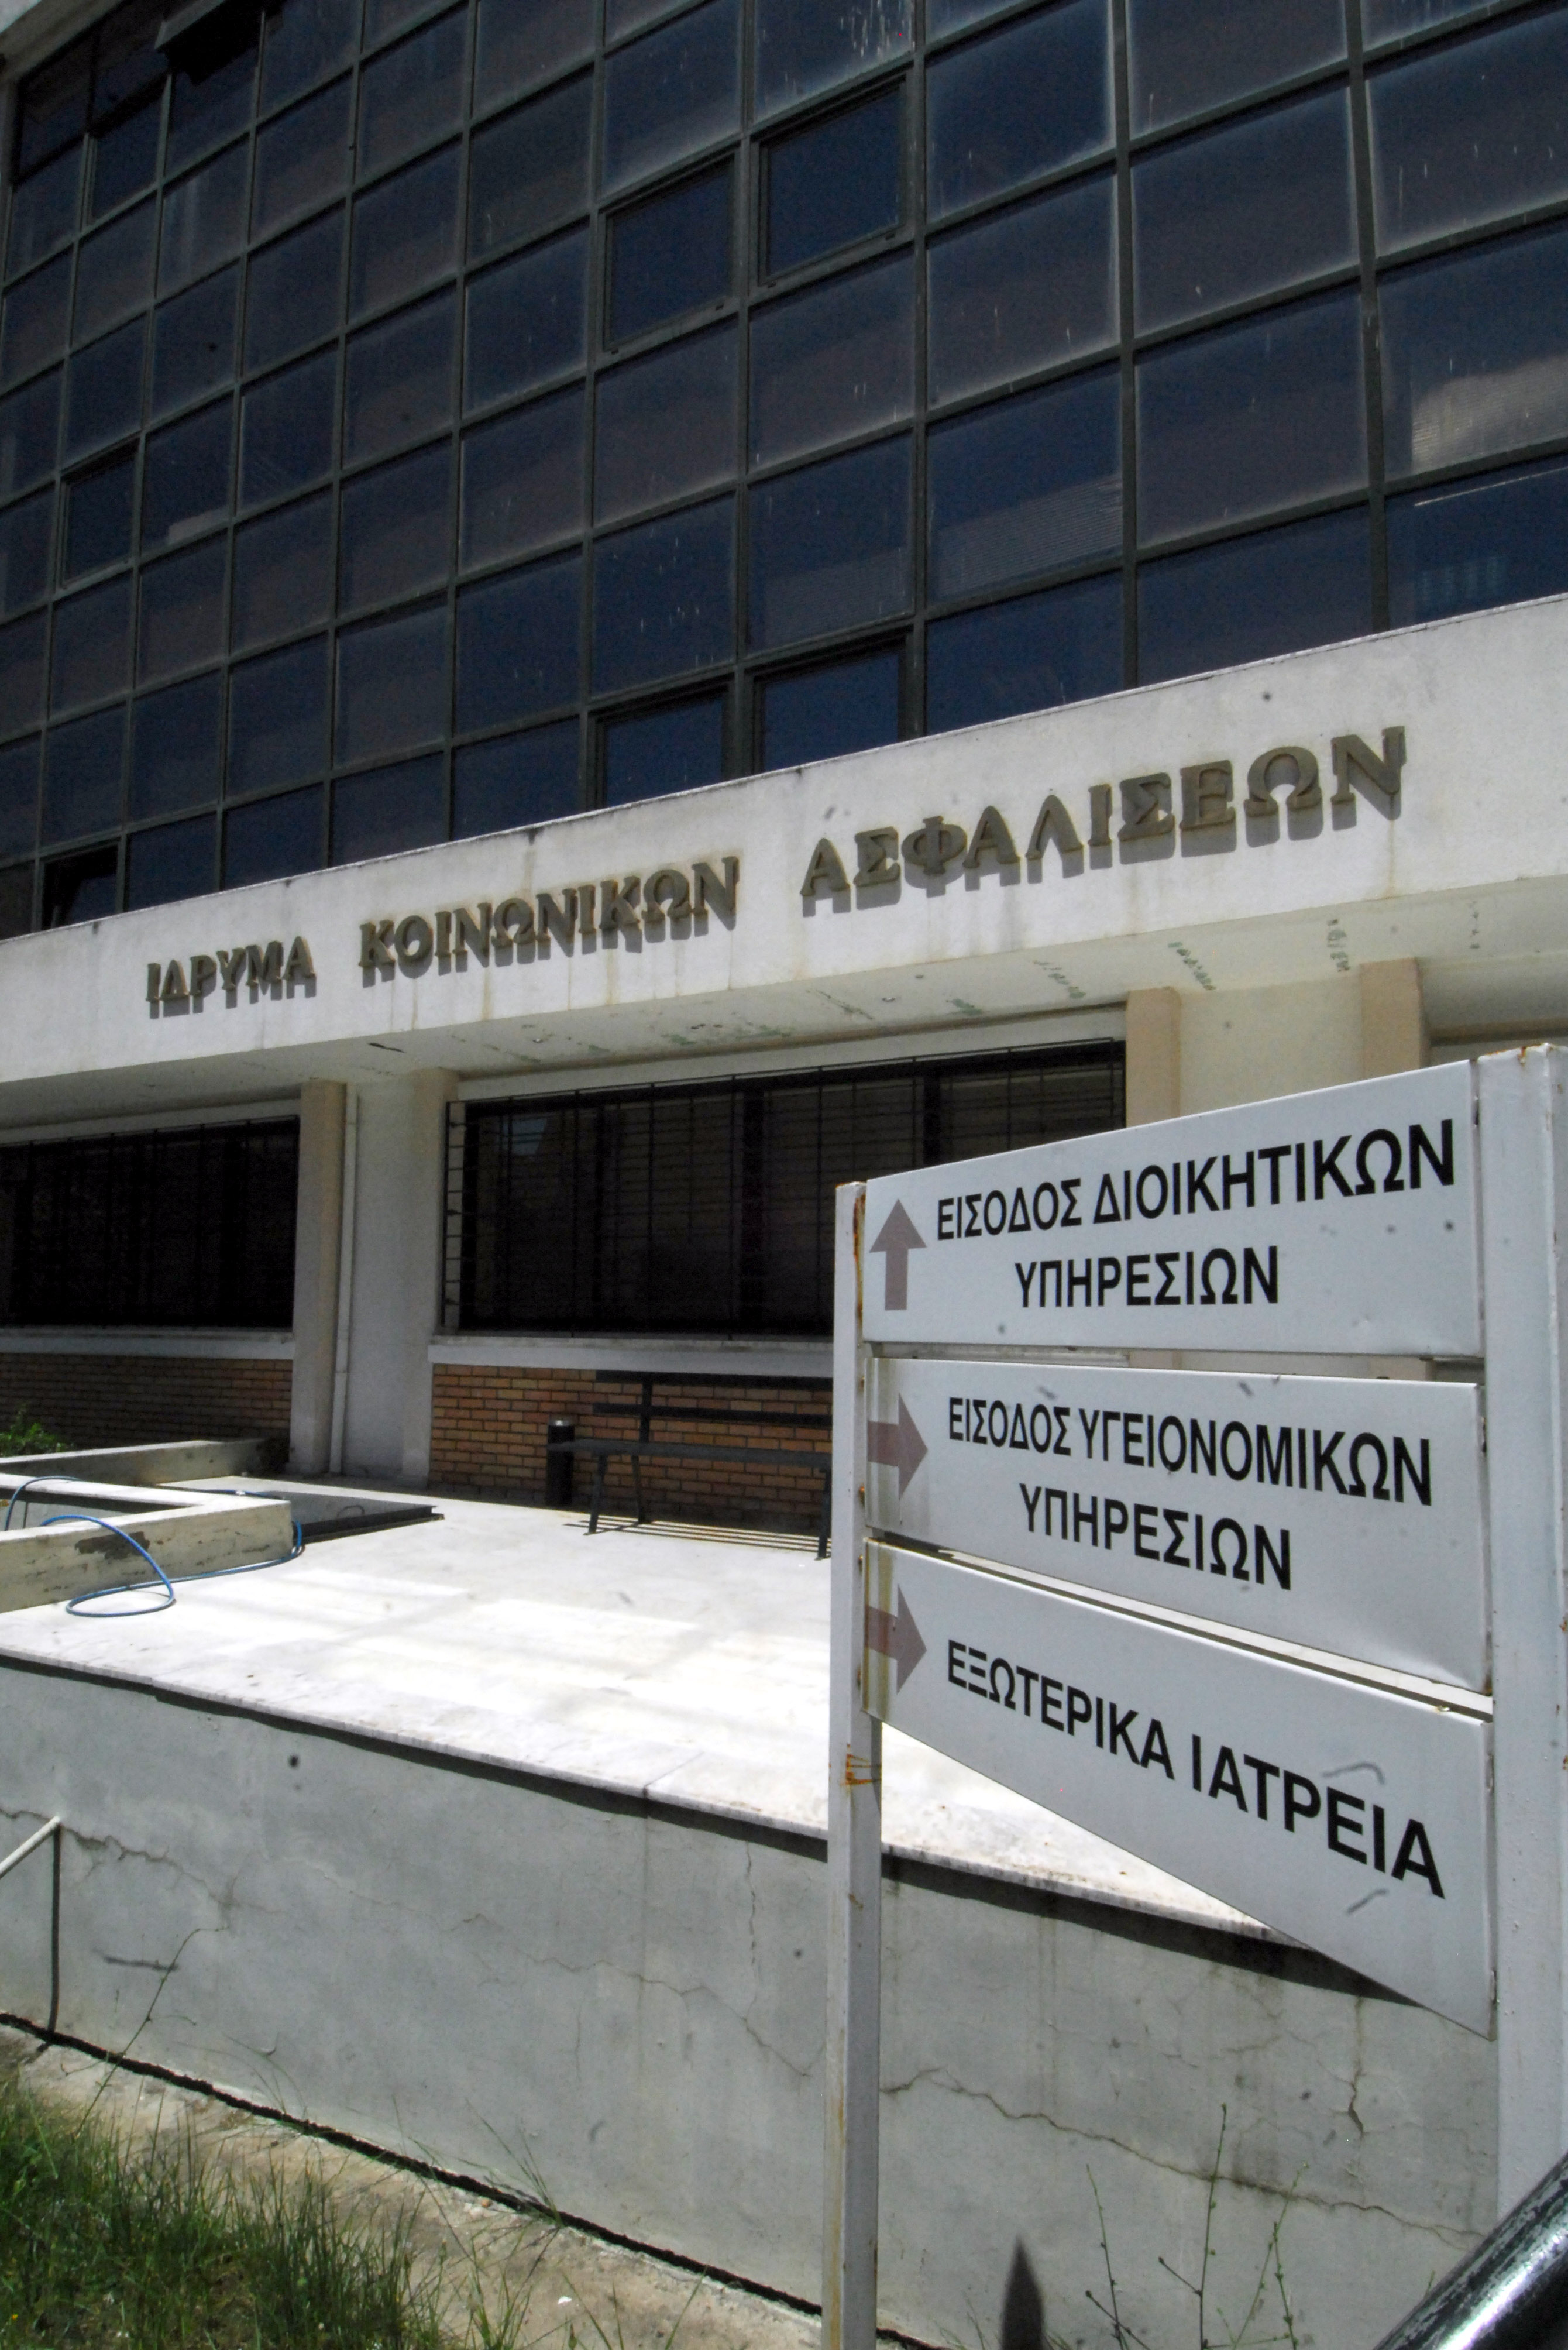 Συμμετοχή του ΙΚΑ στην επαναγορά ομολόγων προανήγγειλε ο Ρ.Σπυρόπουλος